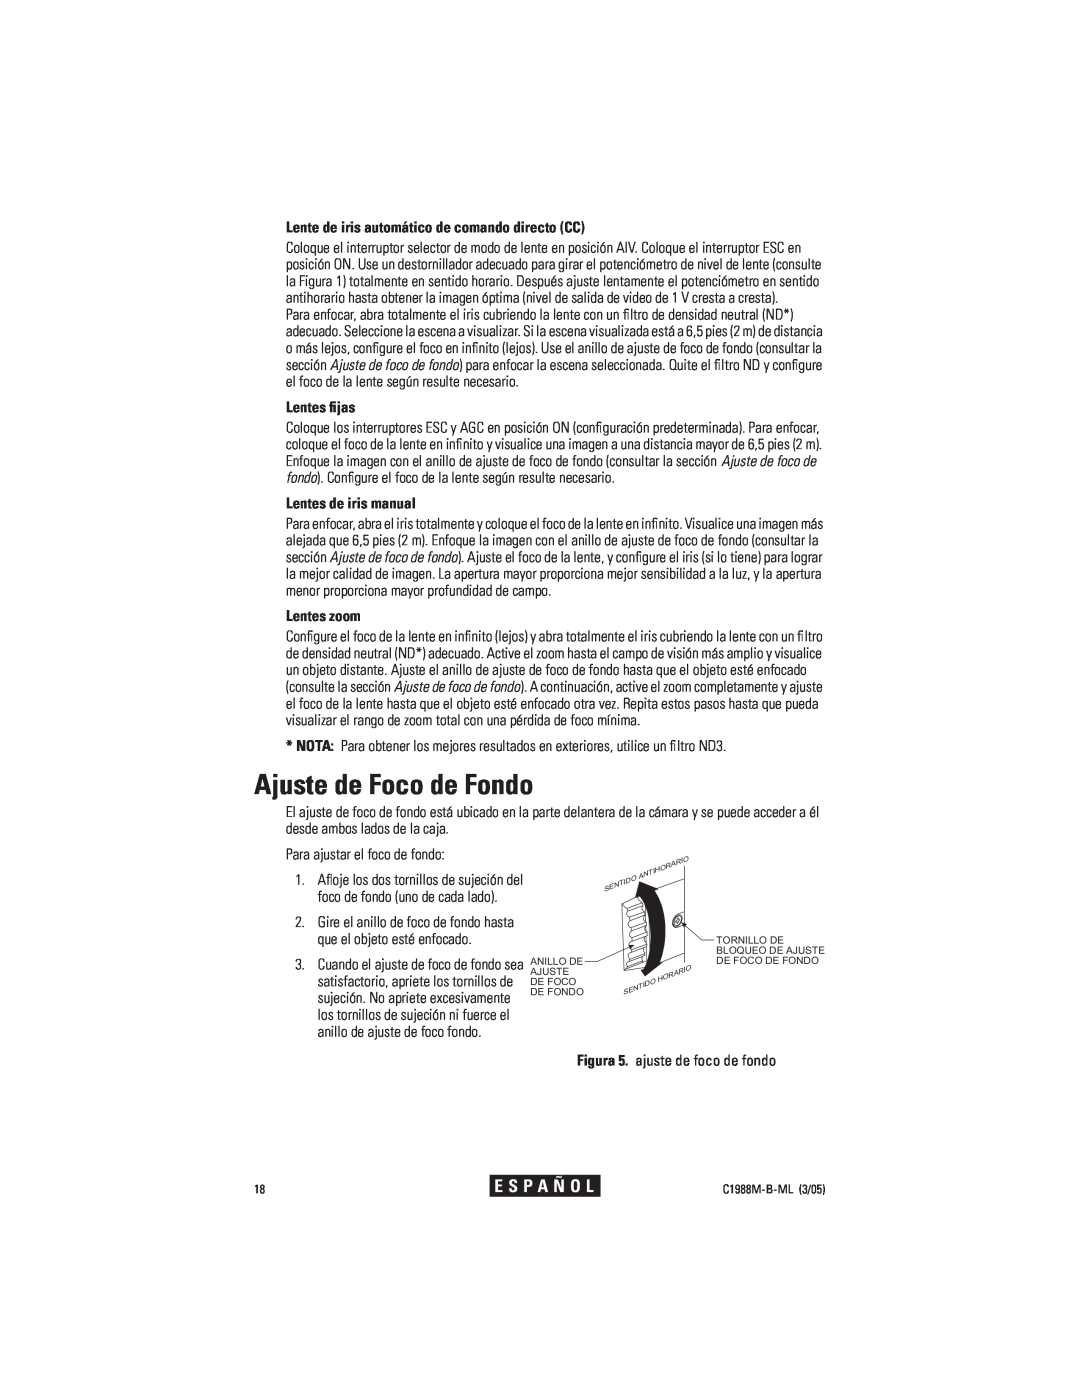 Pelco CC3751H-2 manual Ajuste de Foco de Fondo, Lente de iris automático de comando directo CC, Lentes ﬁjas, Lentes zoom 